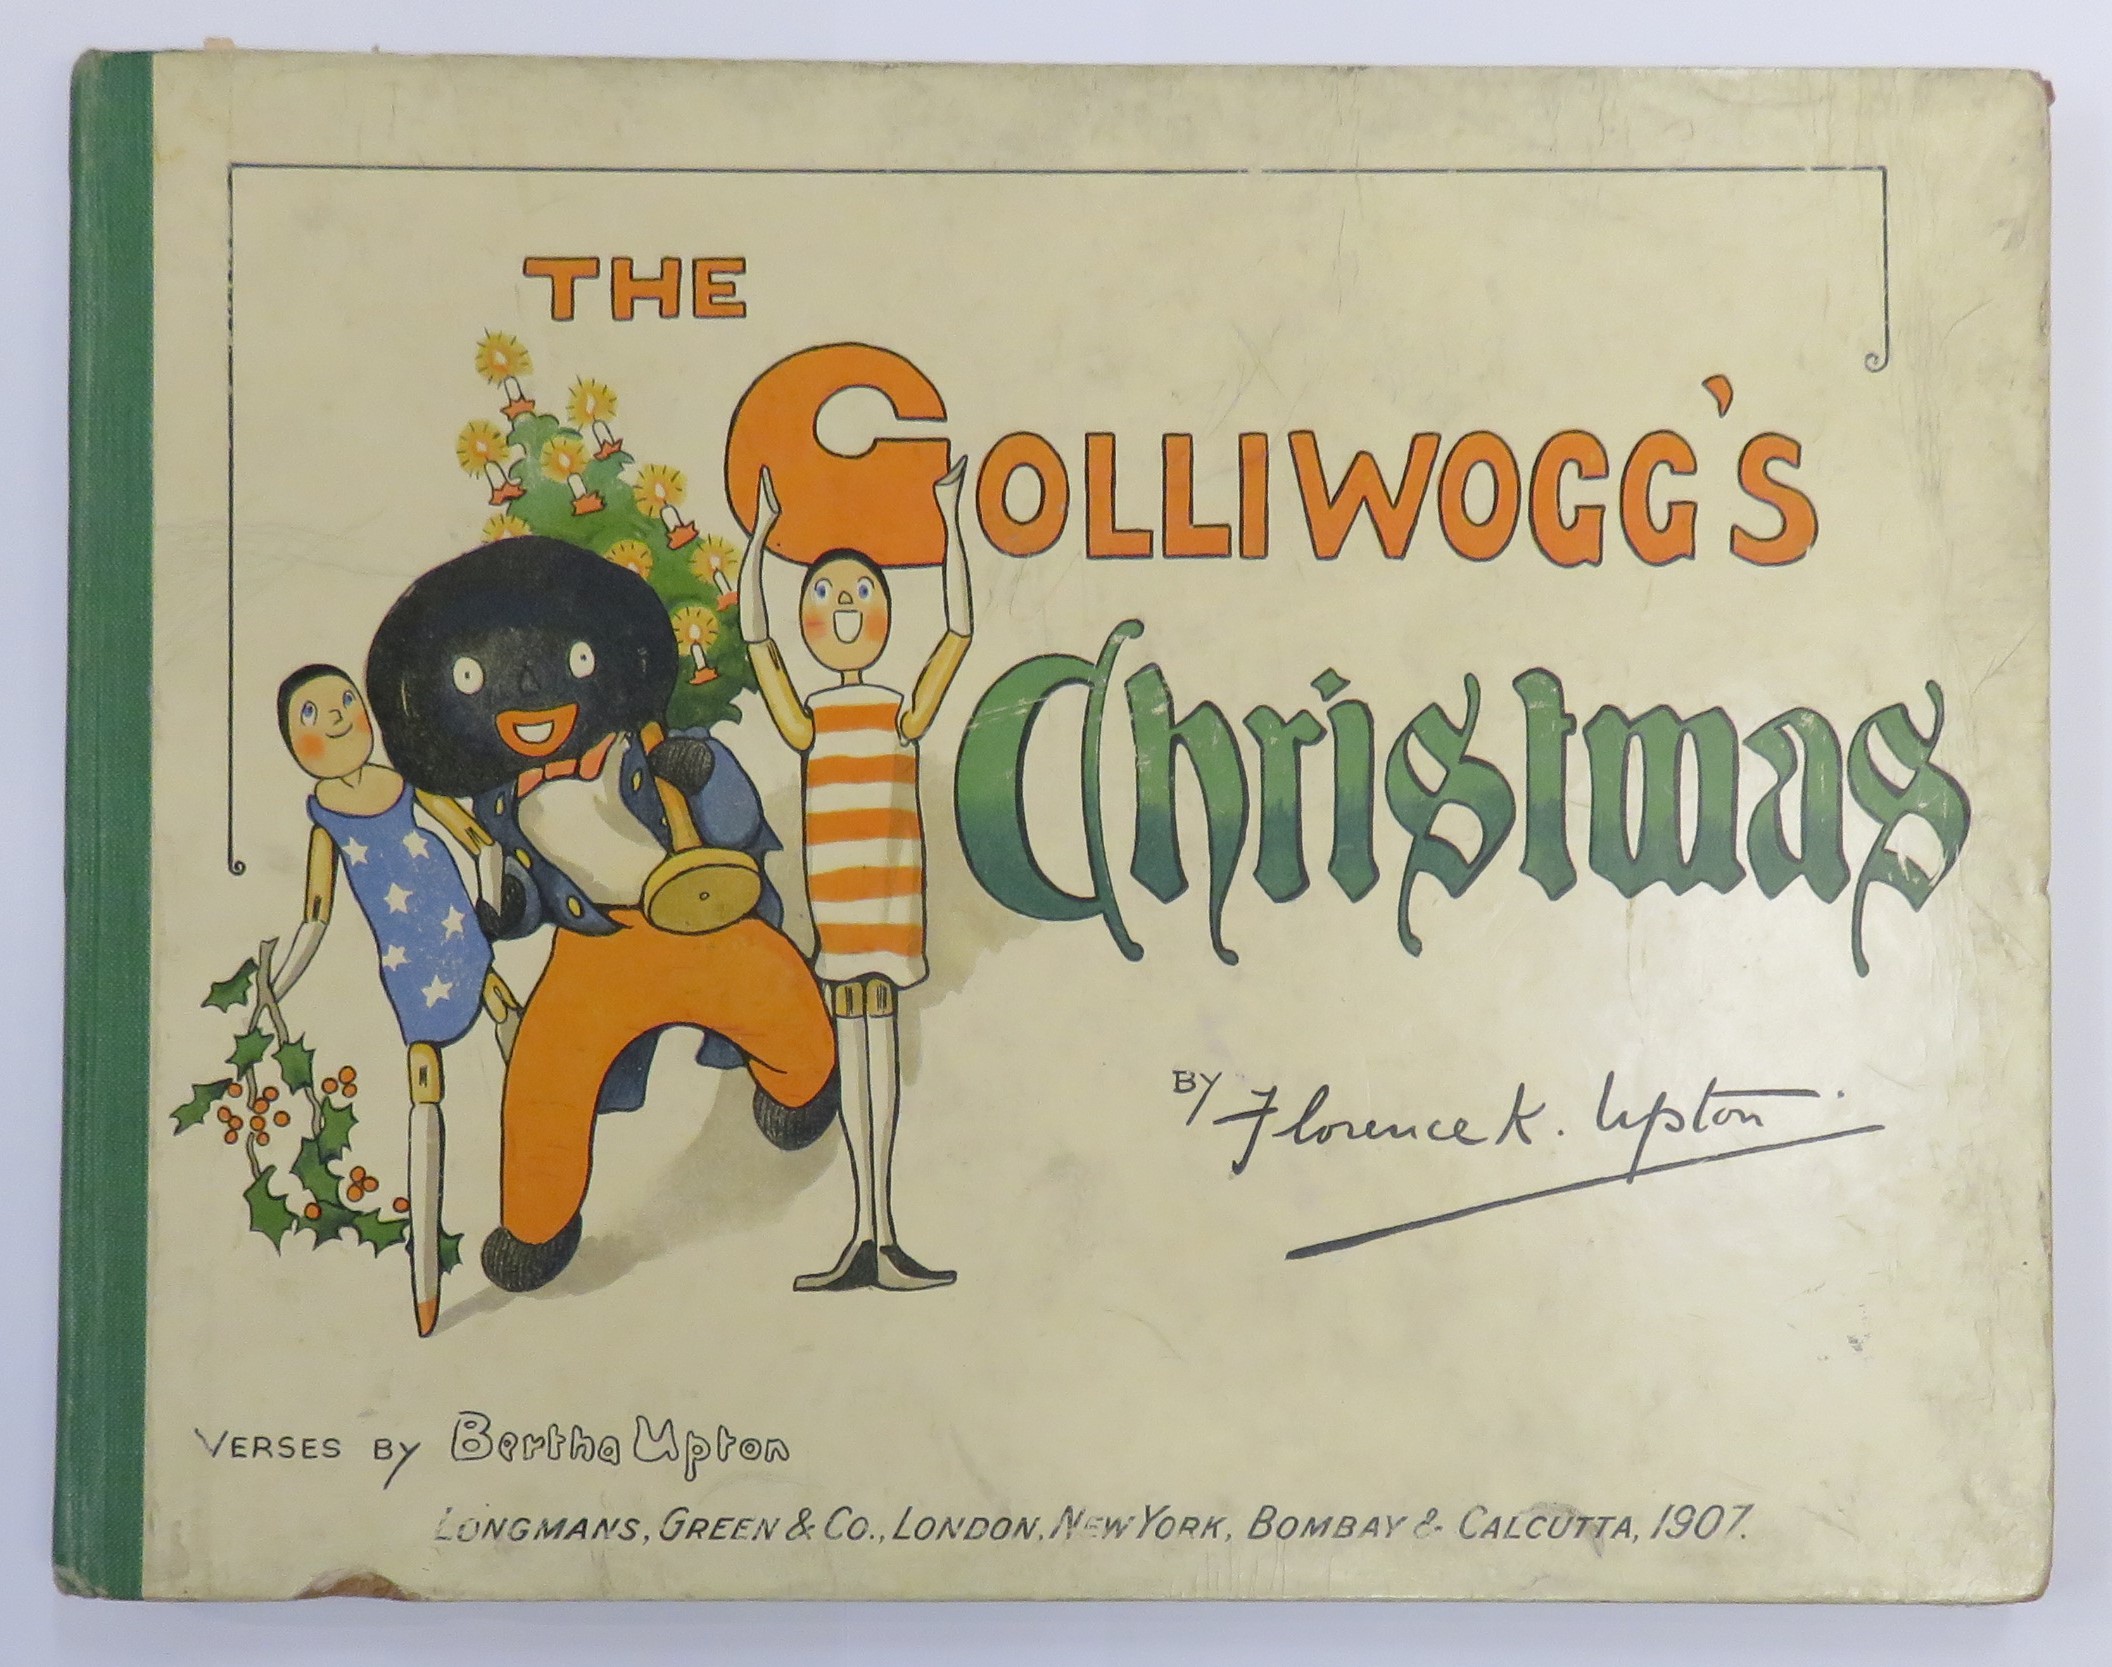 The Golliwogg's Christmas